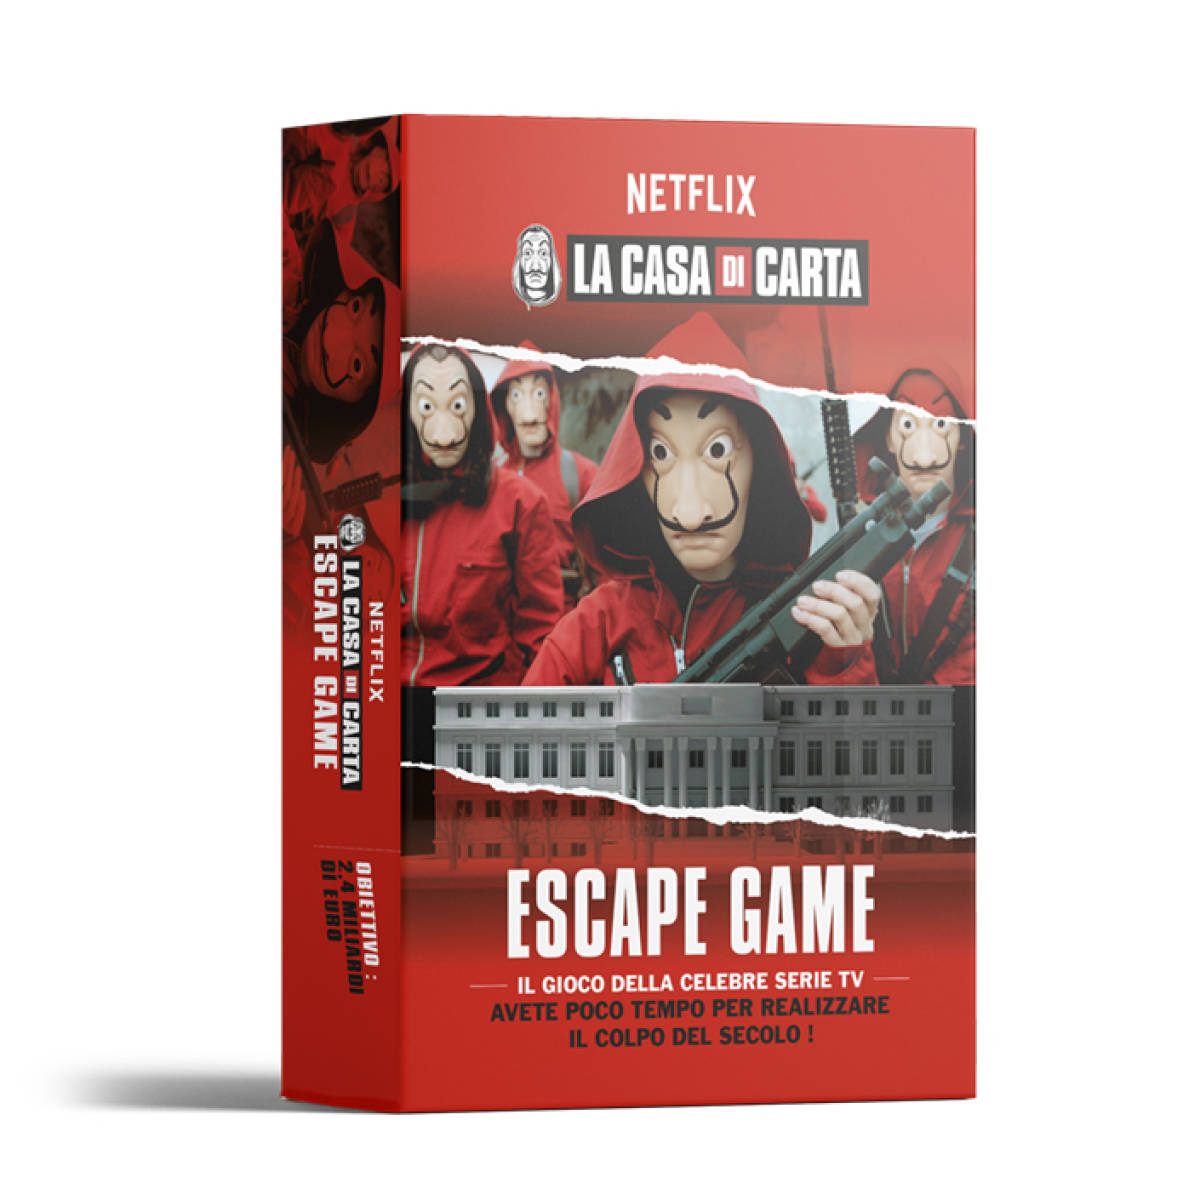 La Casa di Carta Escape Game